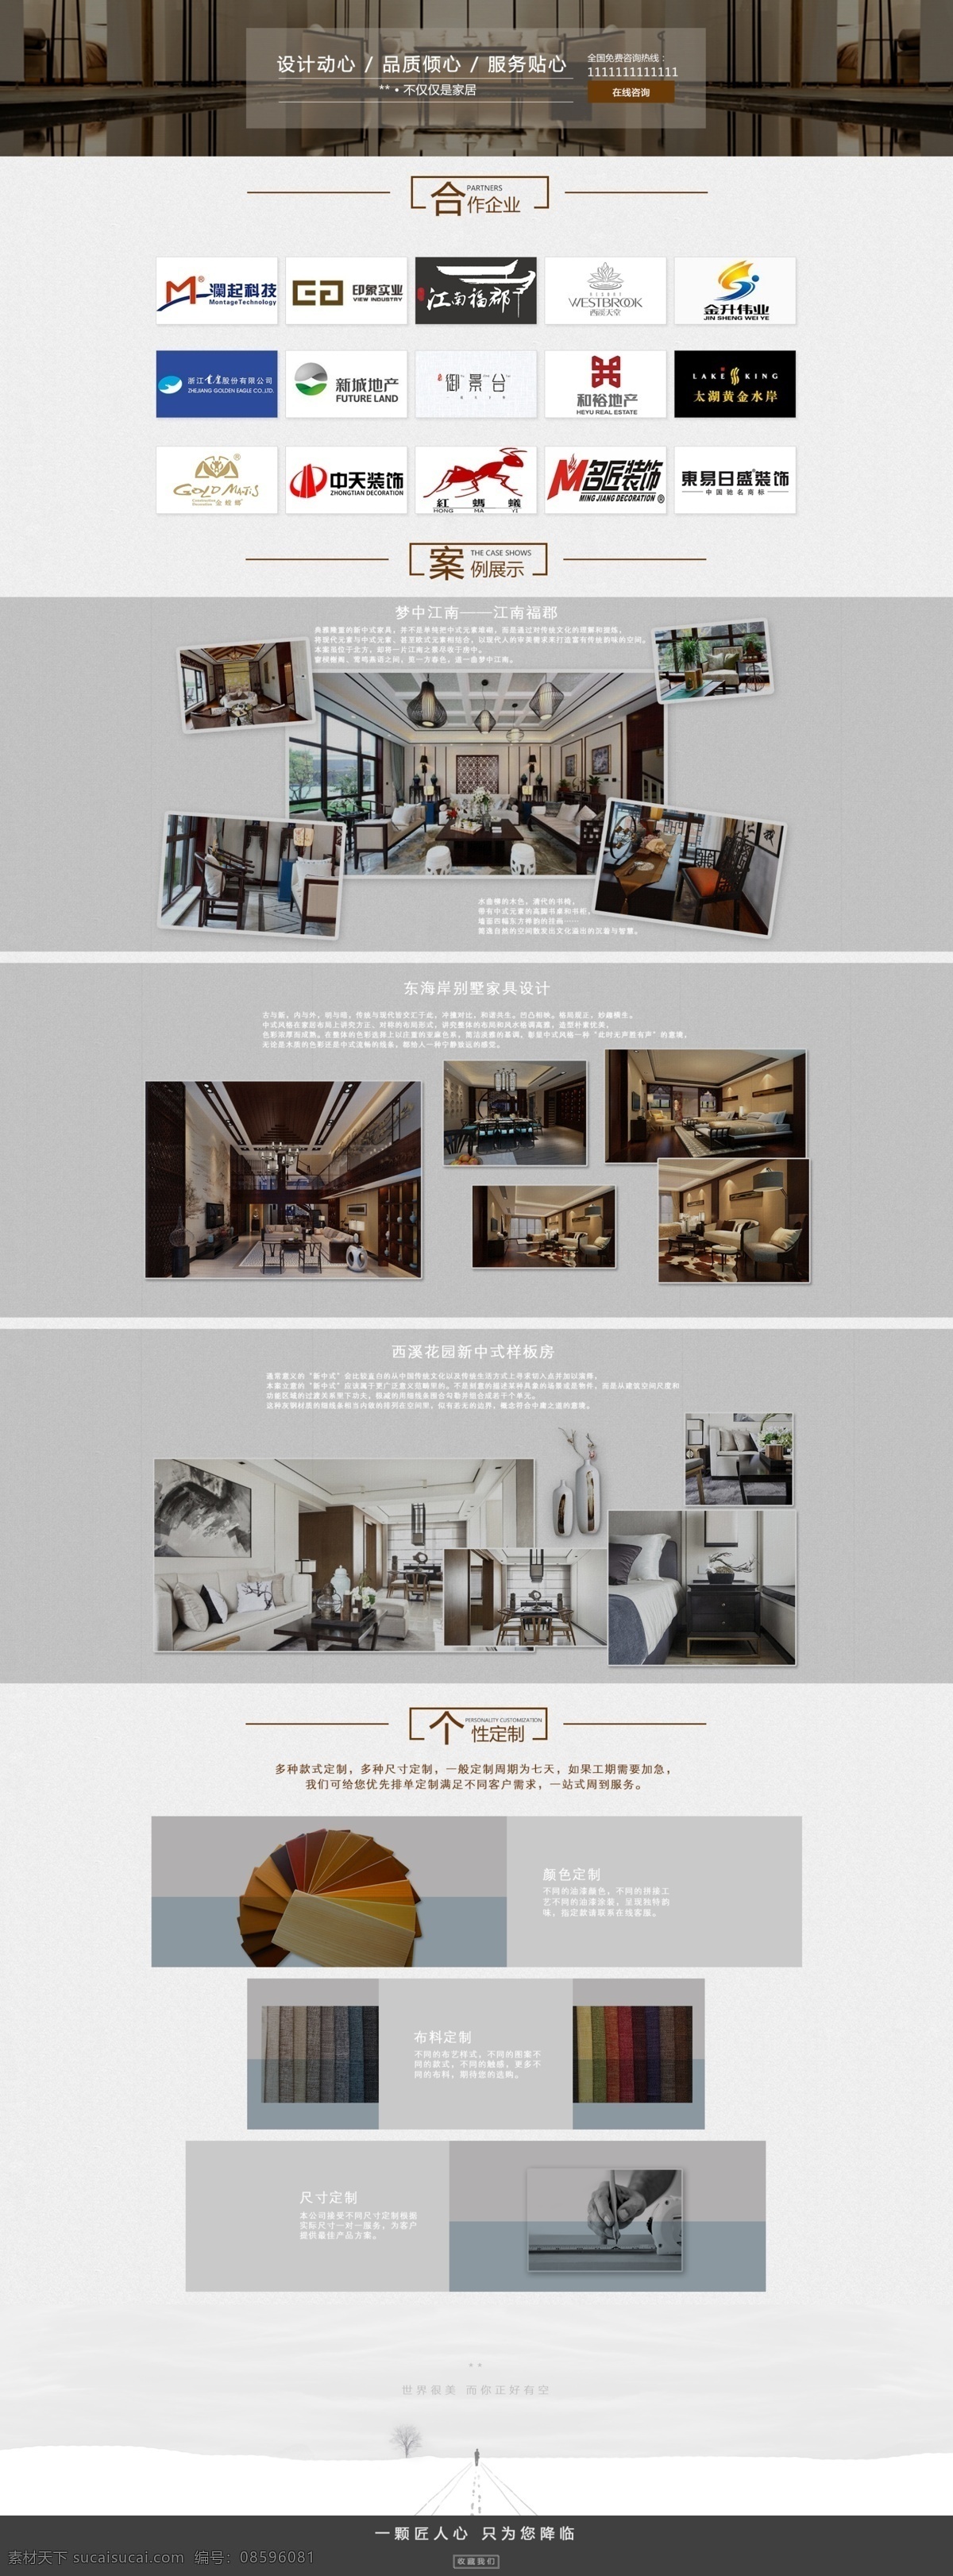 家具 创意 案例 展示 画册设计 模板 品牌设计 创意案例 家具设计案例 白色